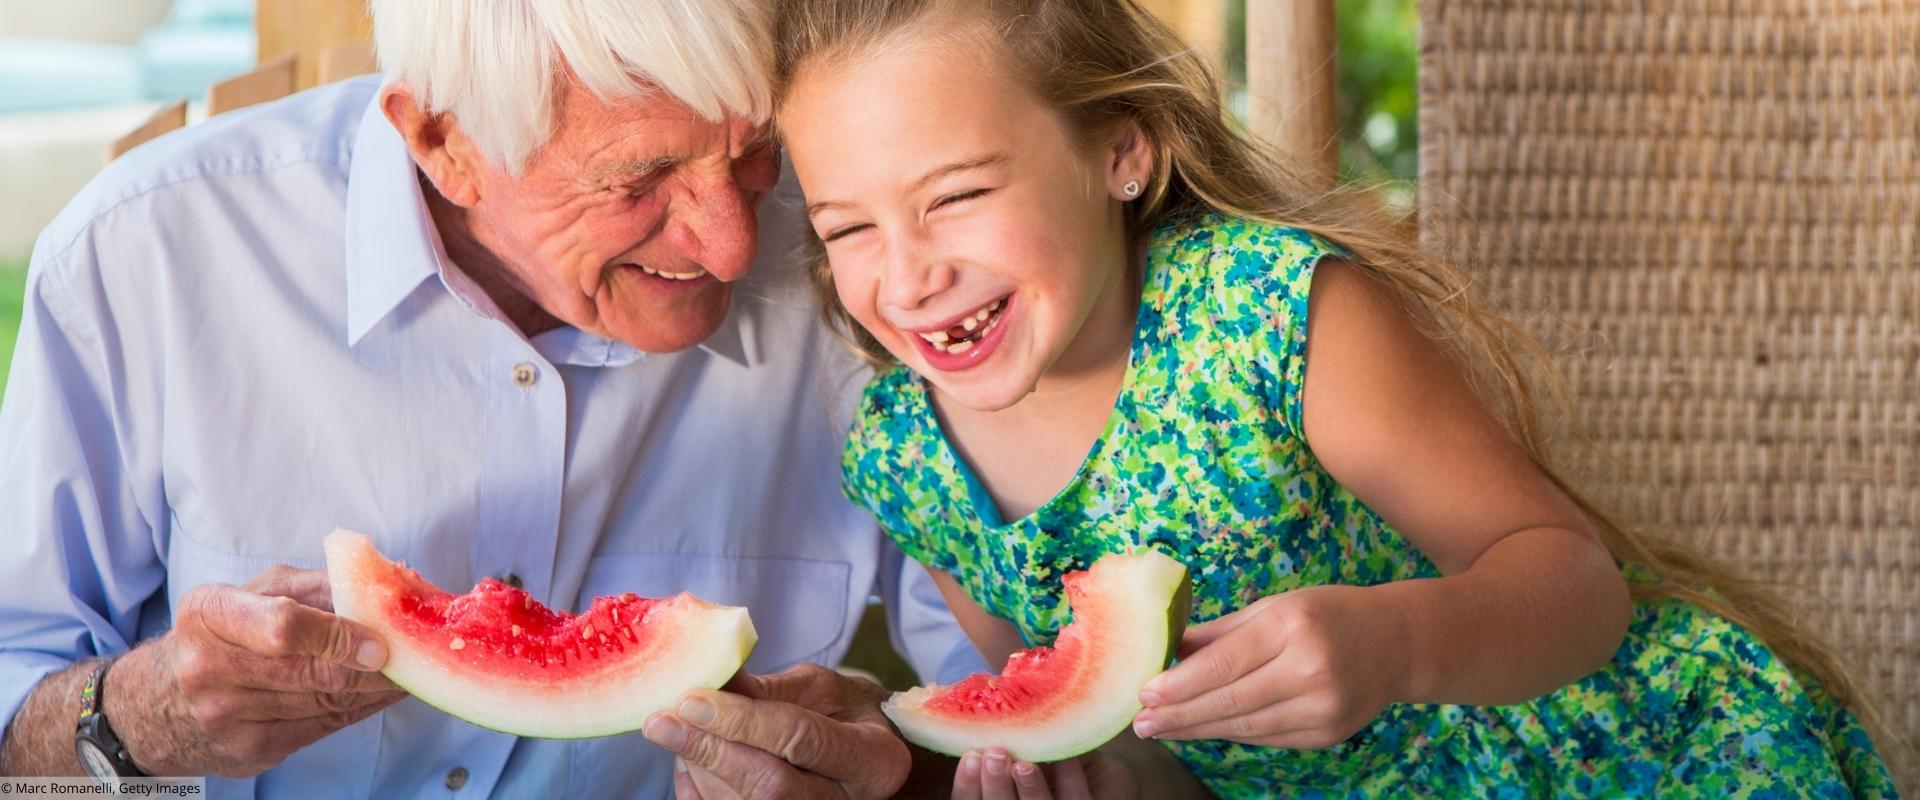 Großvater und Enkelin essen Melone